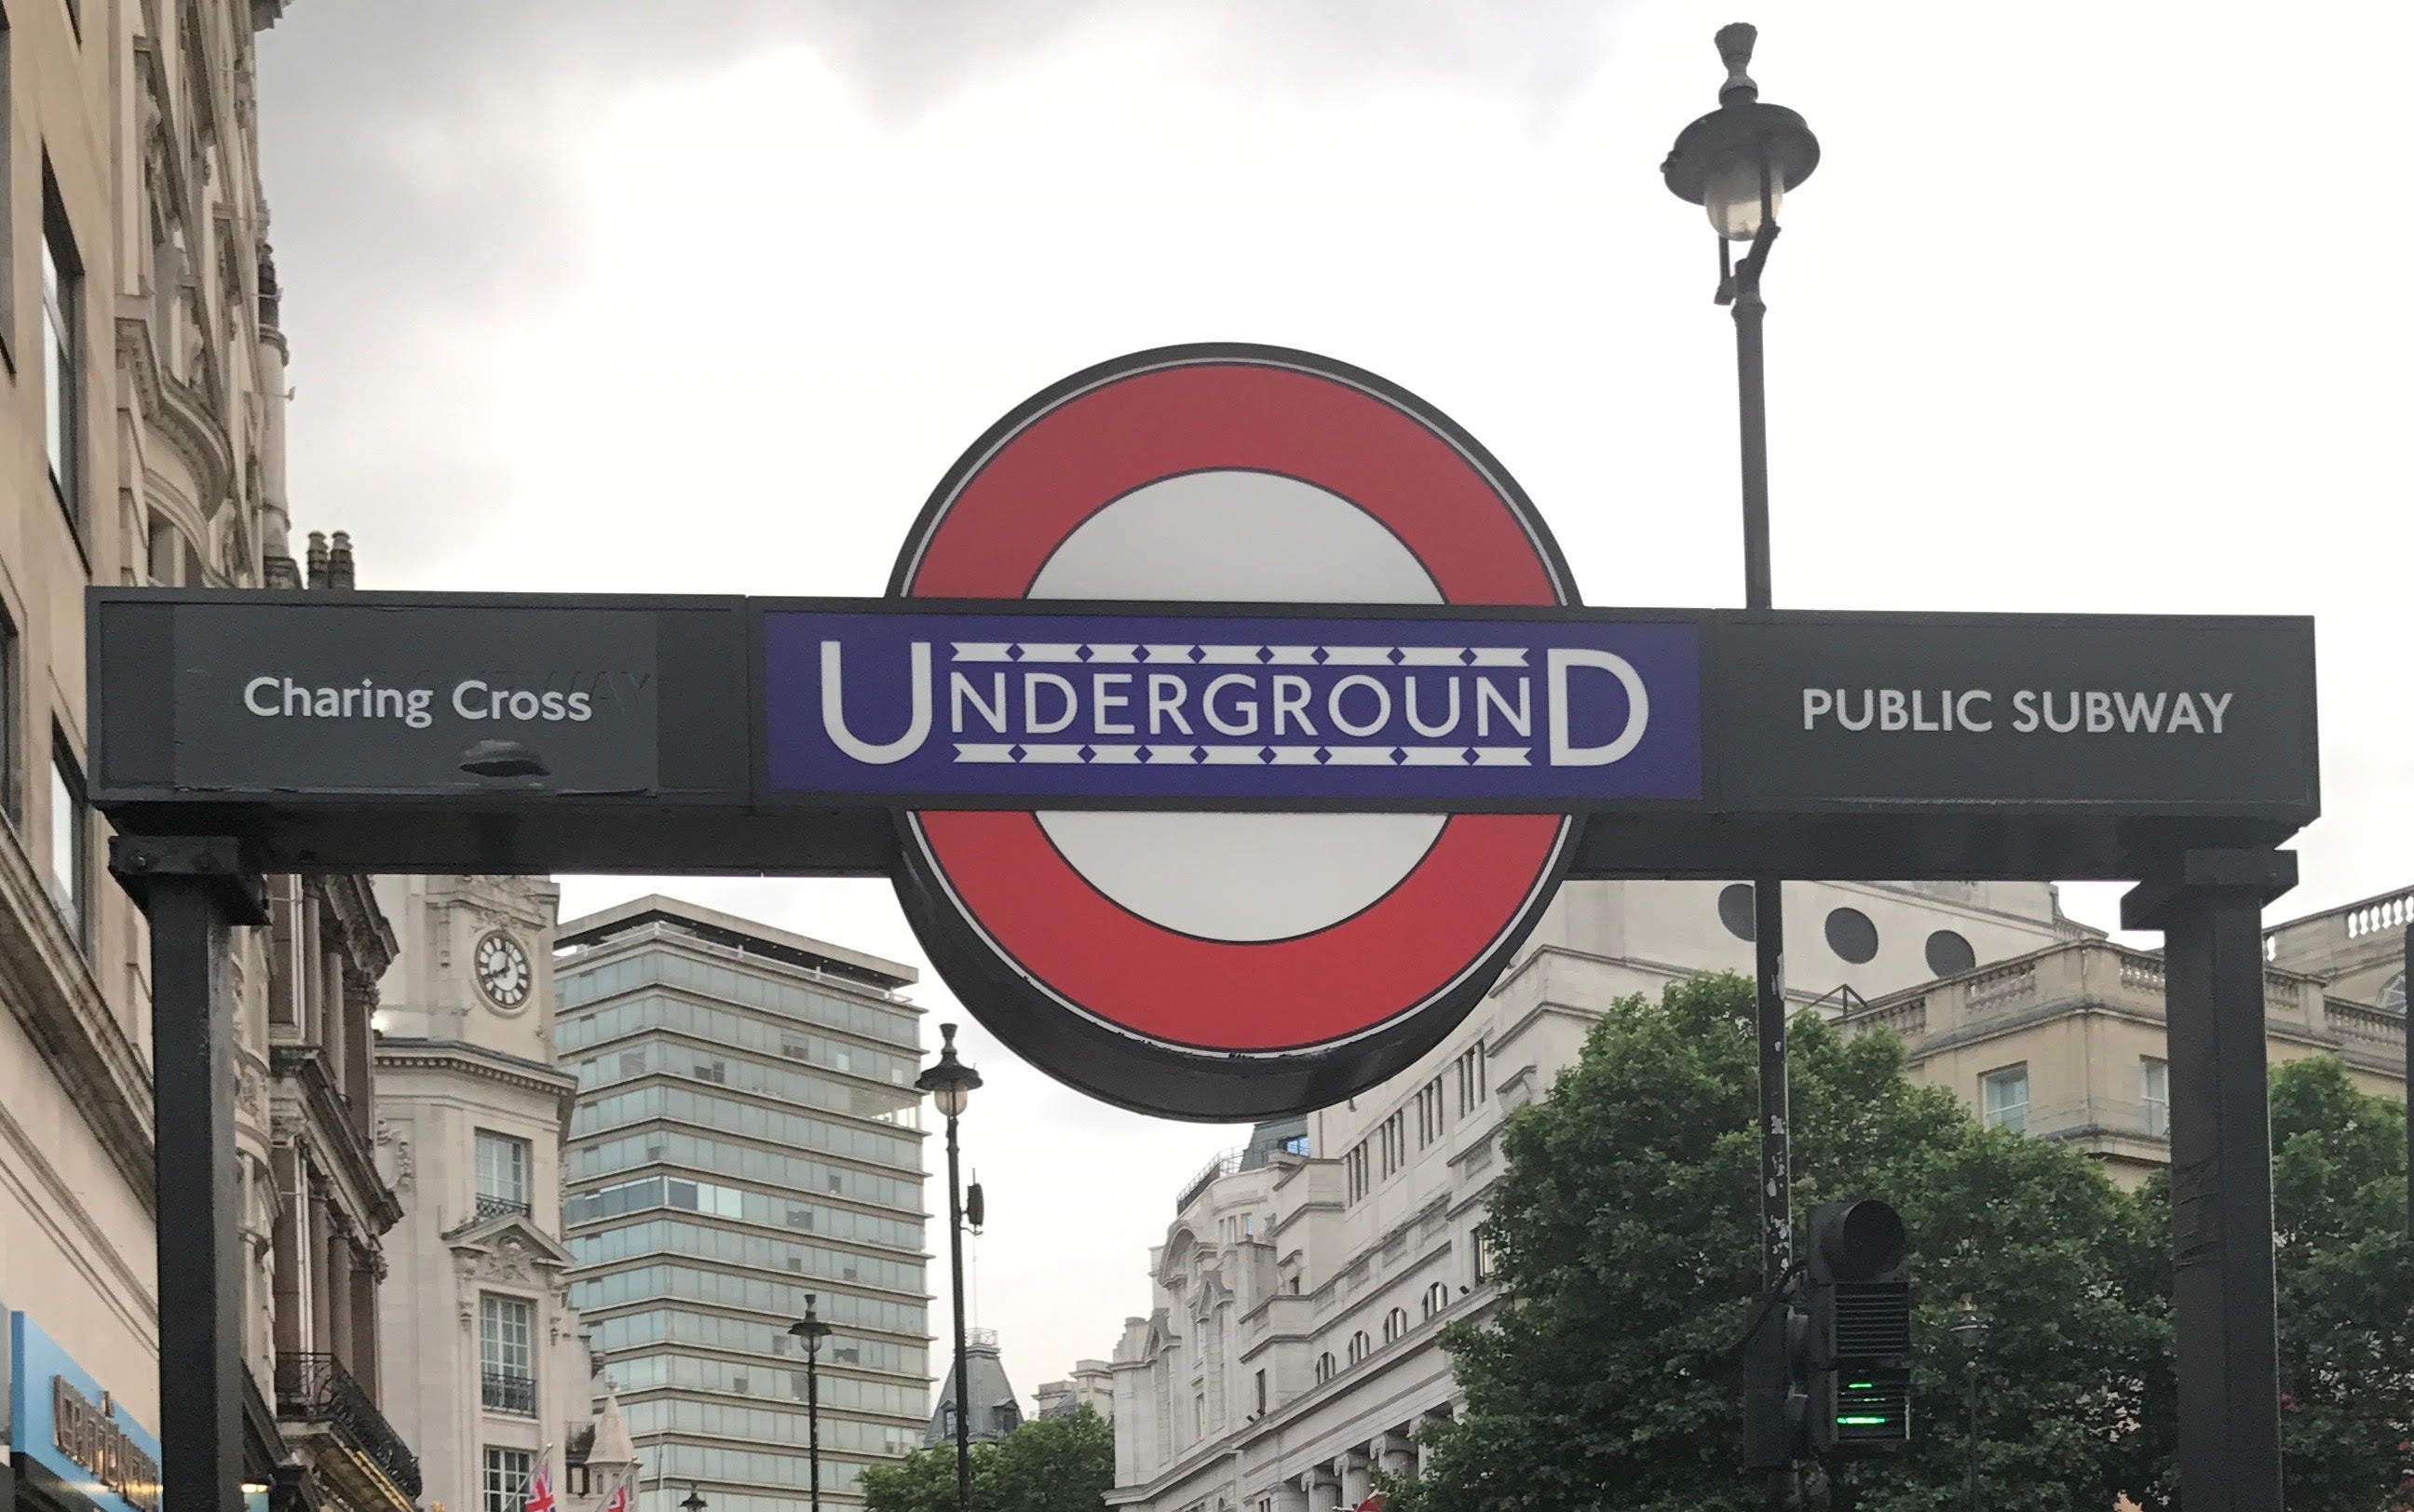 London Underground wayfinding